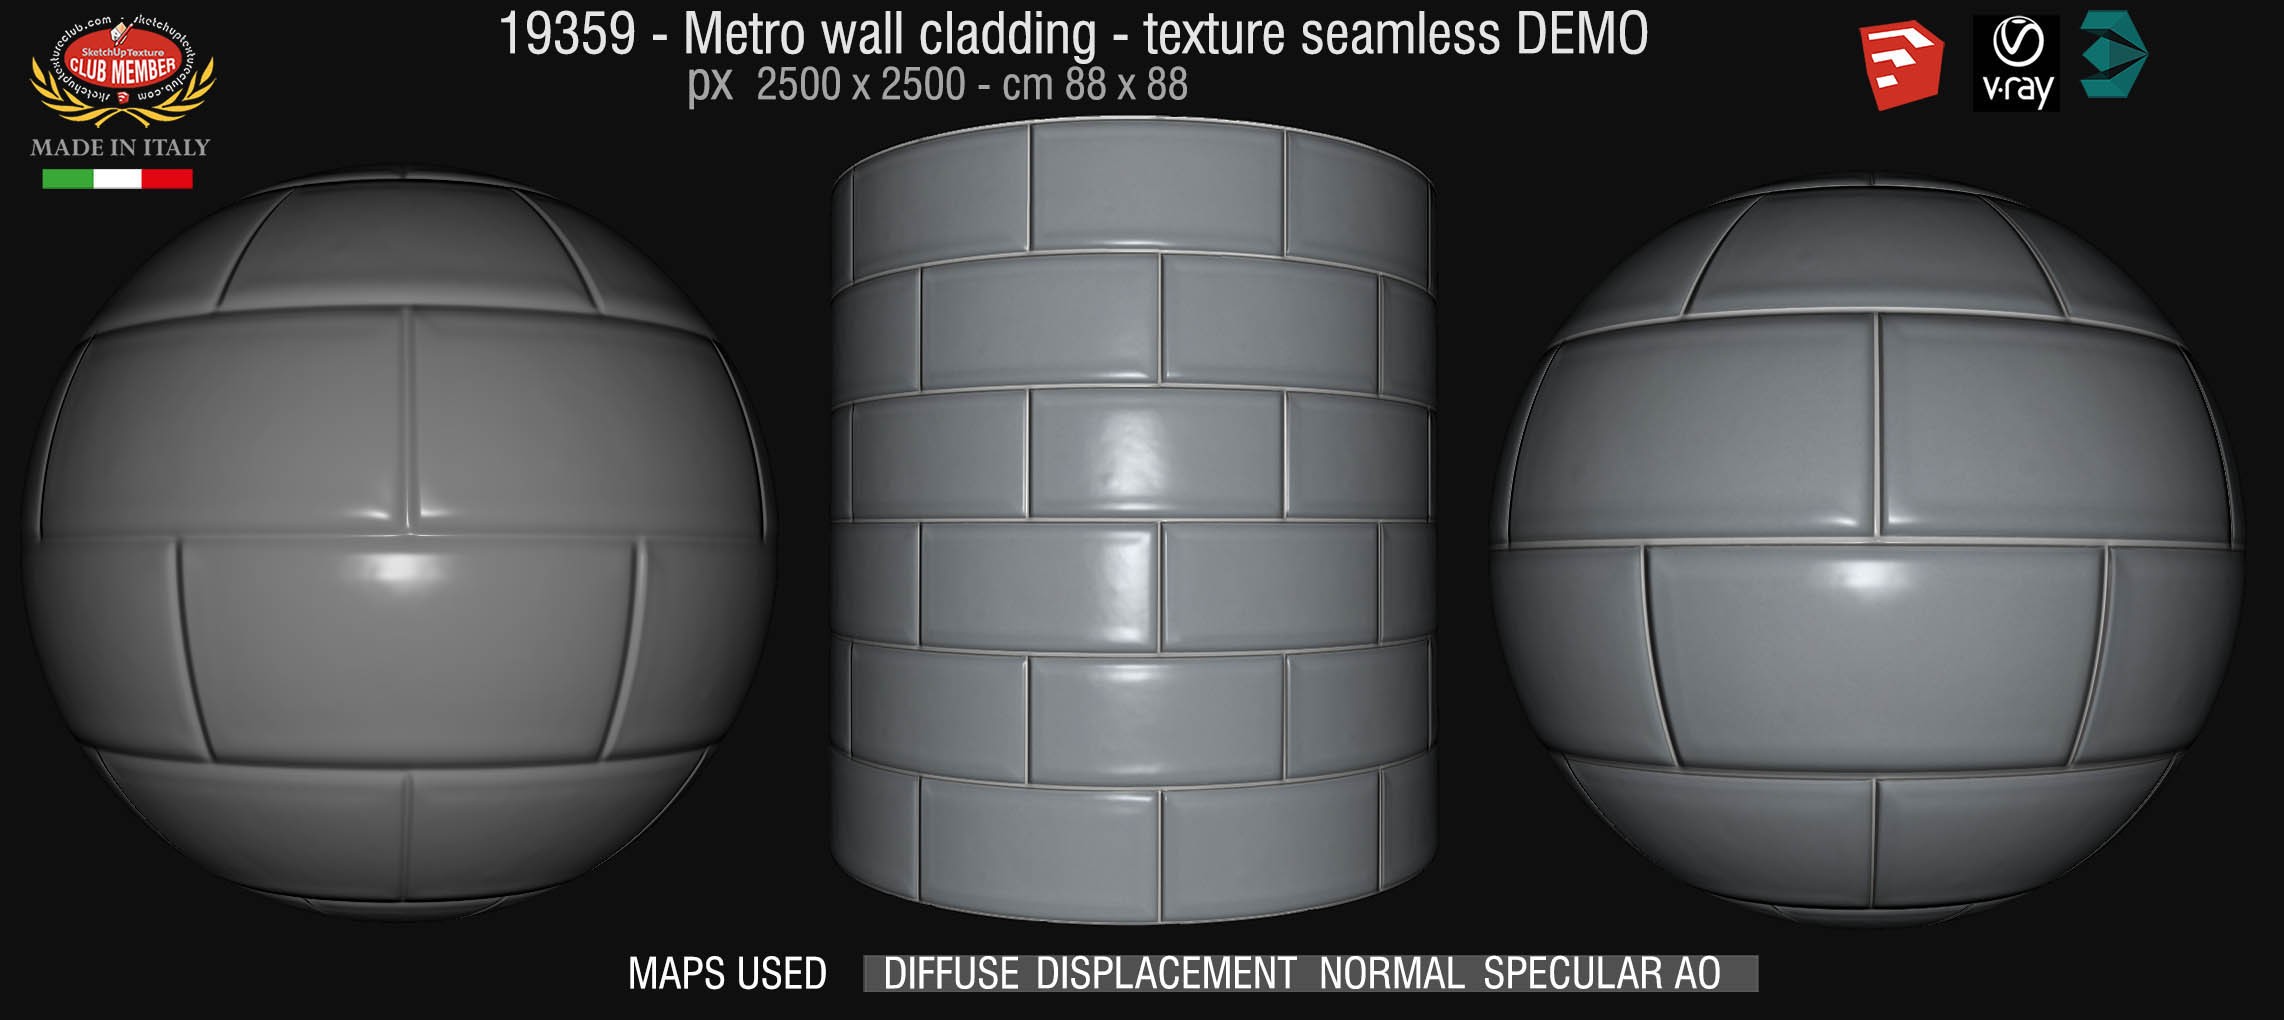 19359 Metro wall cladding stone texture seamless + maps DEMO